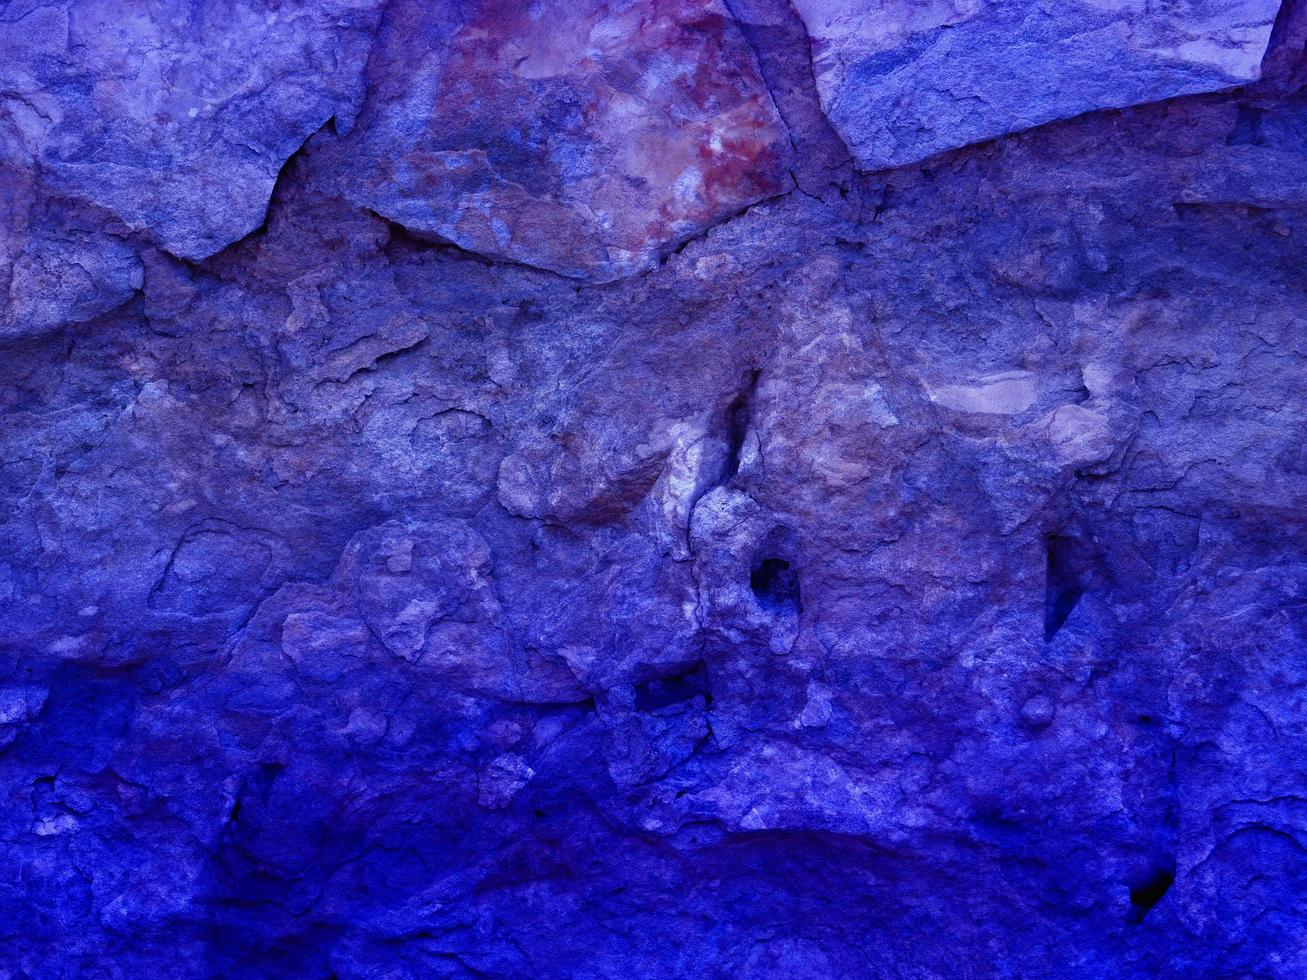 blaue Steinstruktur foto